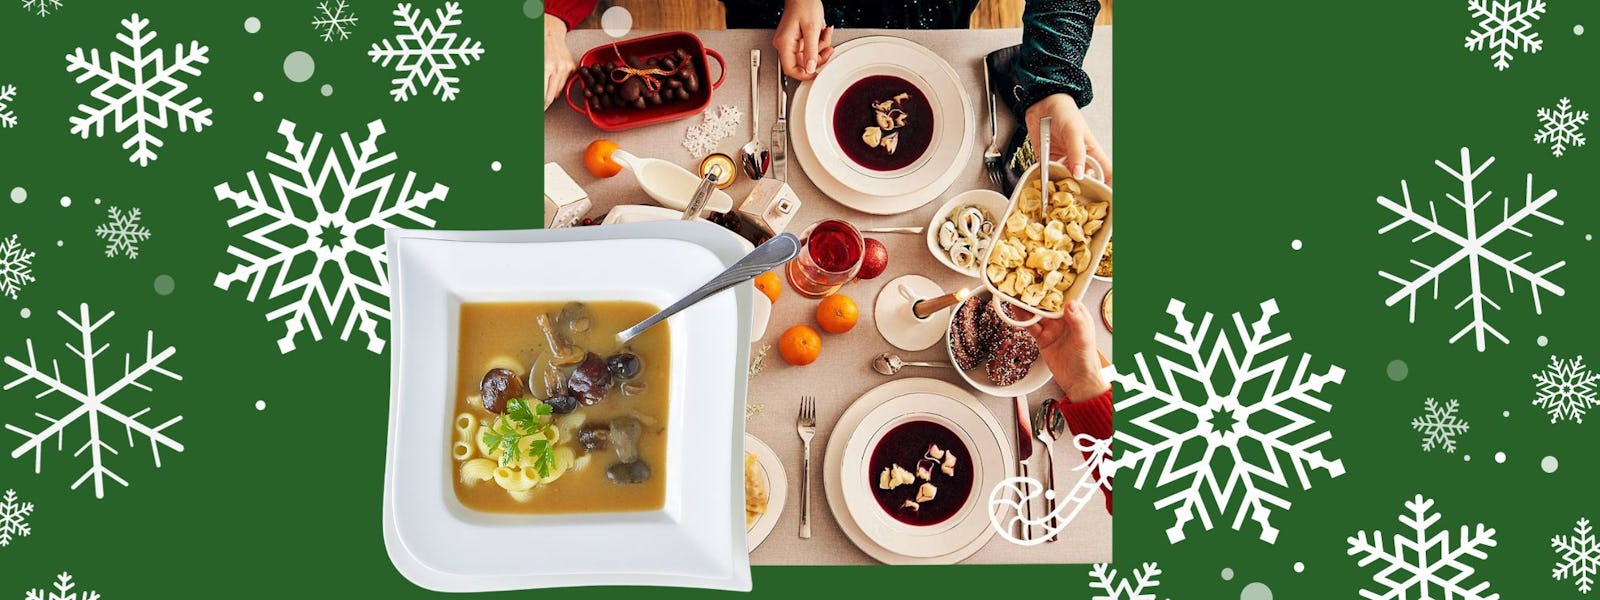 Barszcz czerwony lub zupa grzybowa na wigilijny stół.